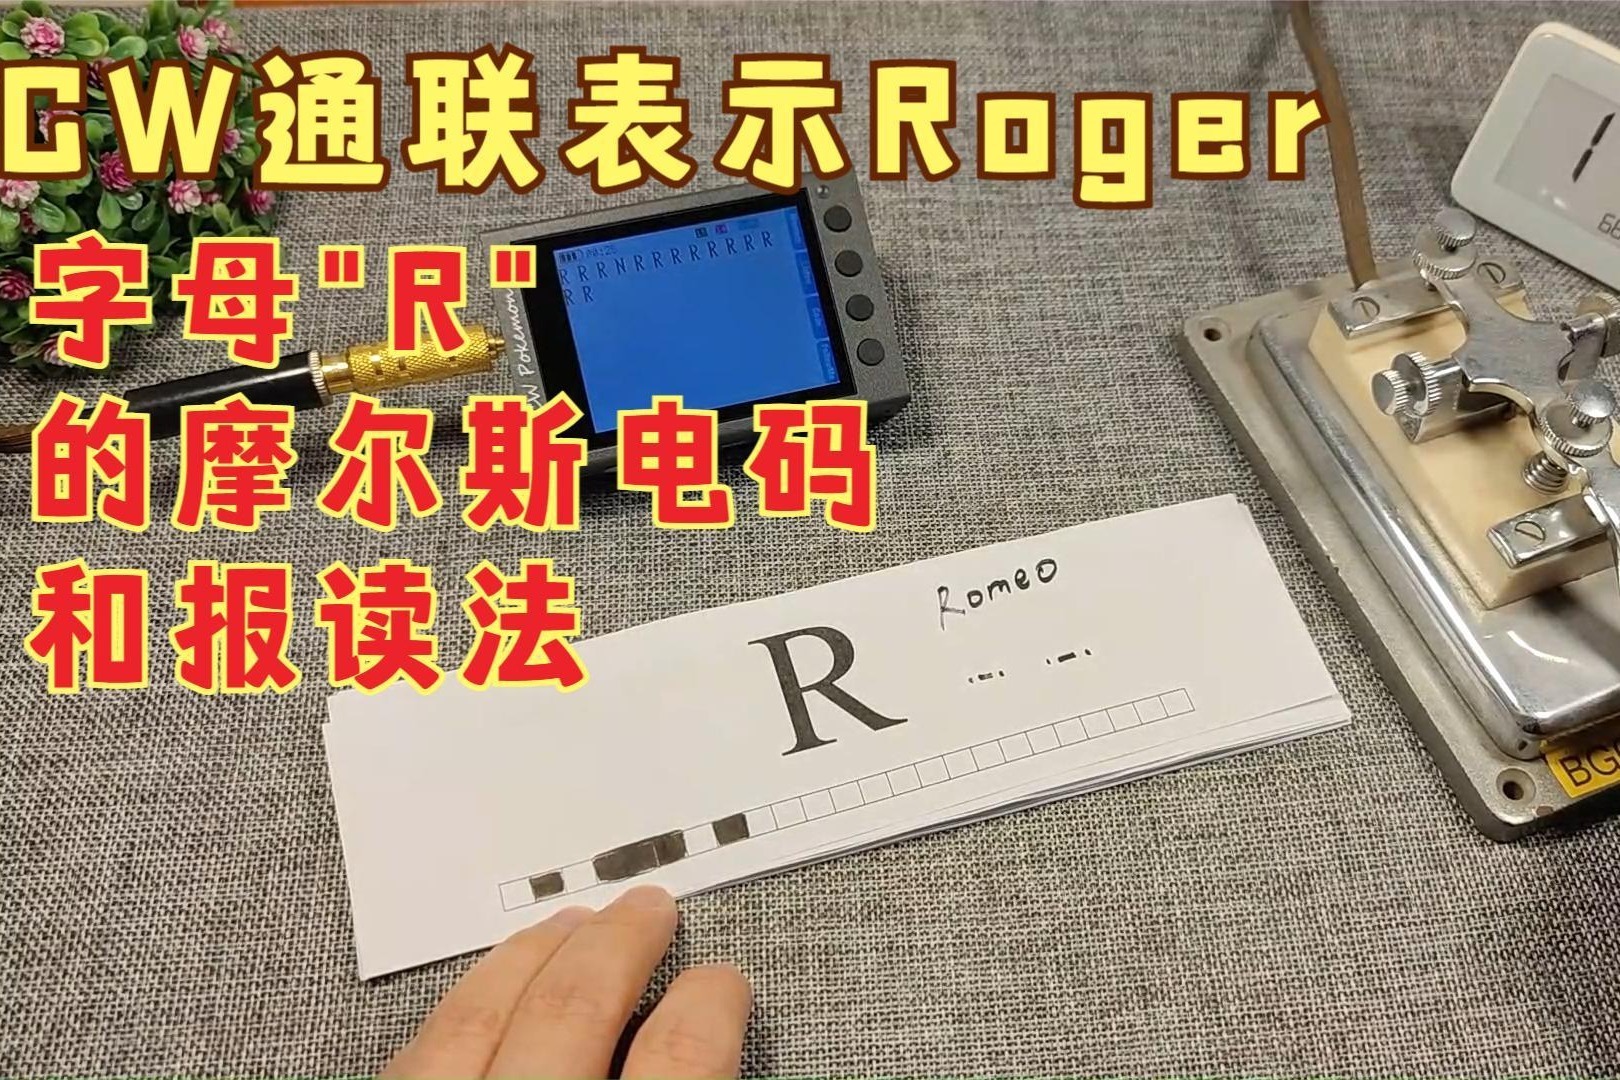 CW通联中表示Roger的字母，使用练习器学习摩尔斯电码和报读法